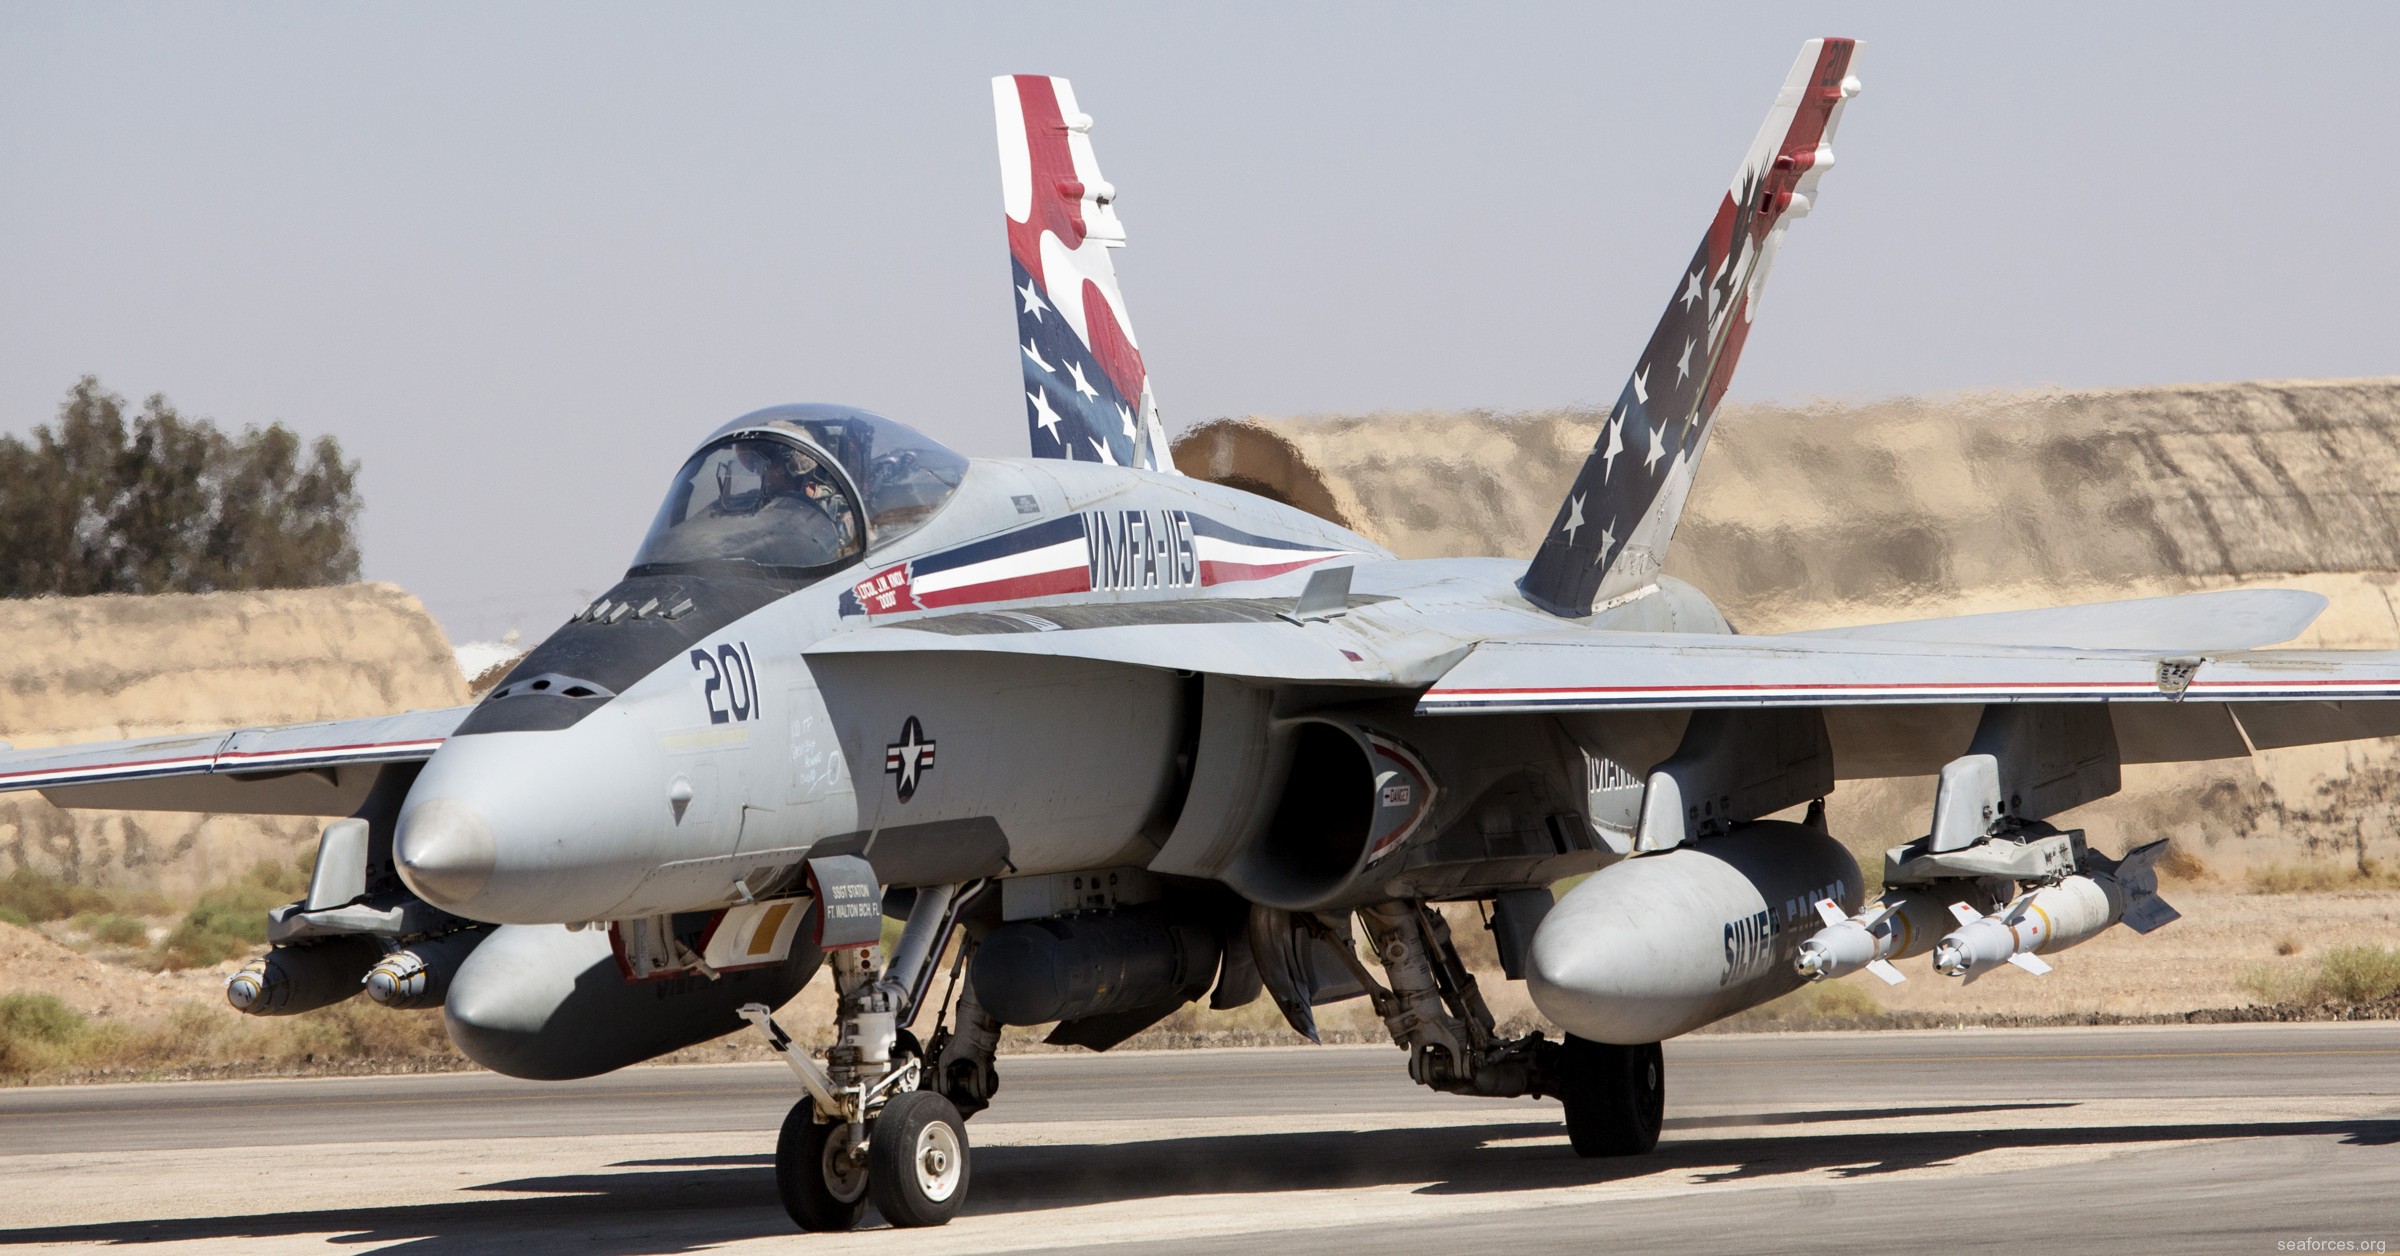 vmfa-115 silver eagles marine fighter attack squadron f/a-18a+ hornet 155 special color scheme